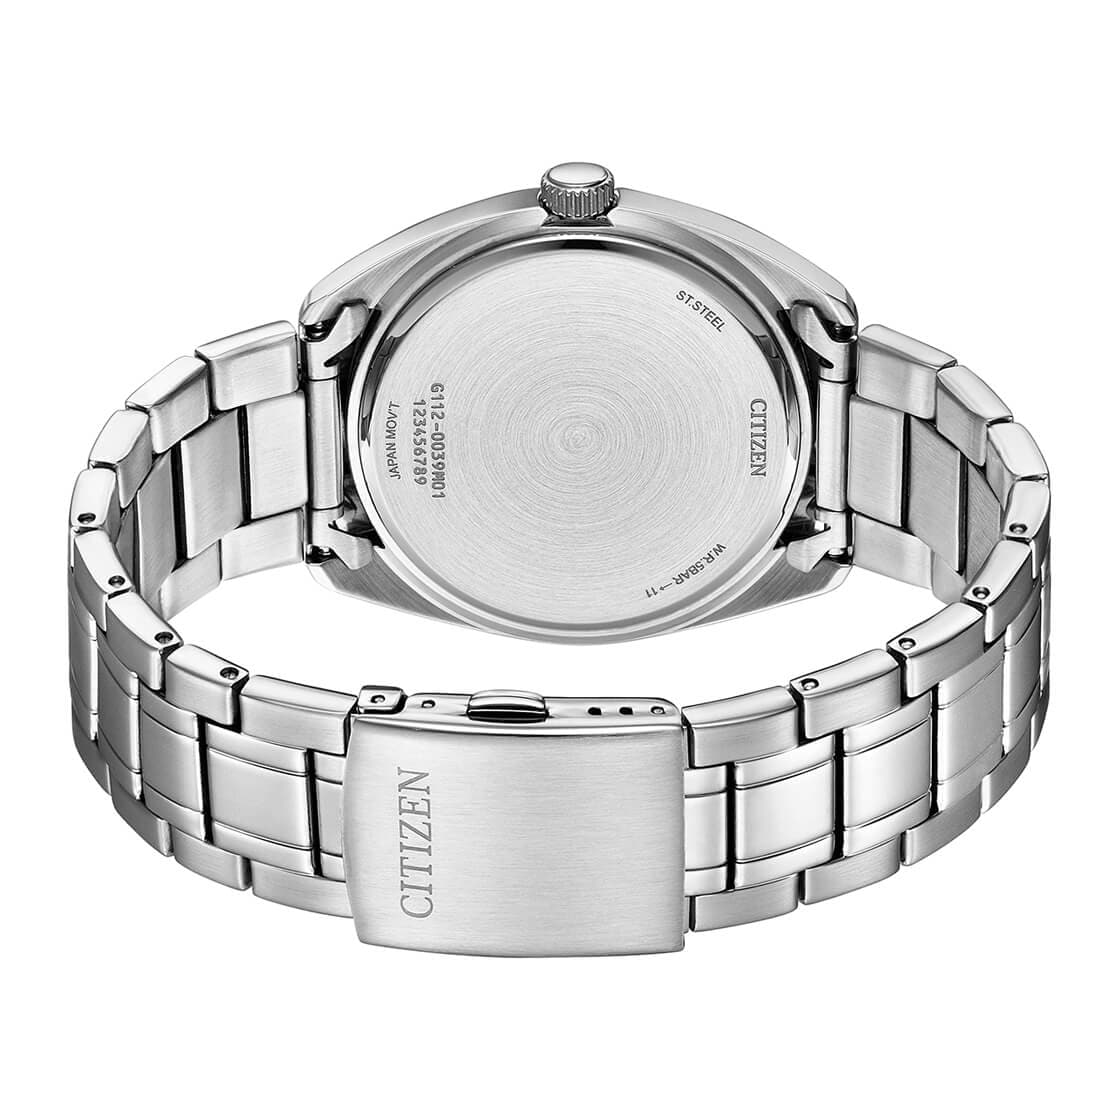 CITIZEN QUARTZ GENTS WATCH WHITE DIAL - BI5100-58A - Kamal Watch Company